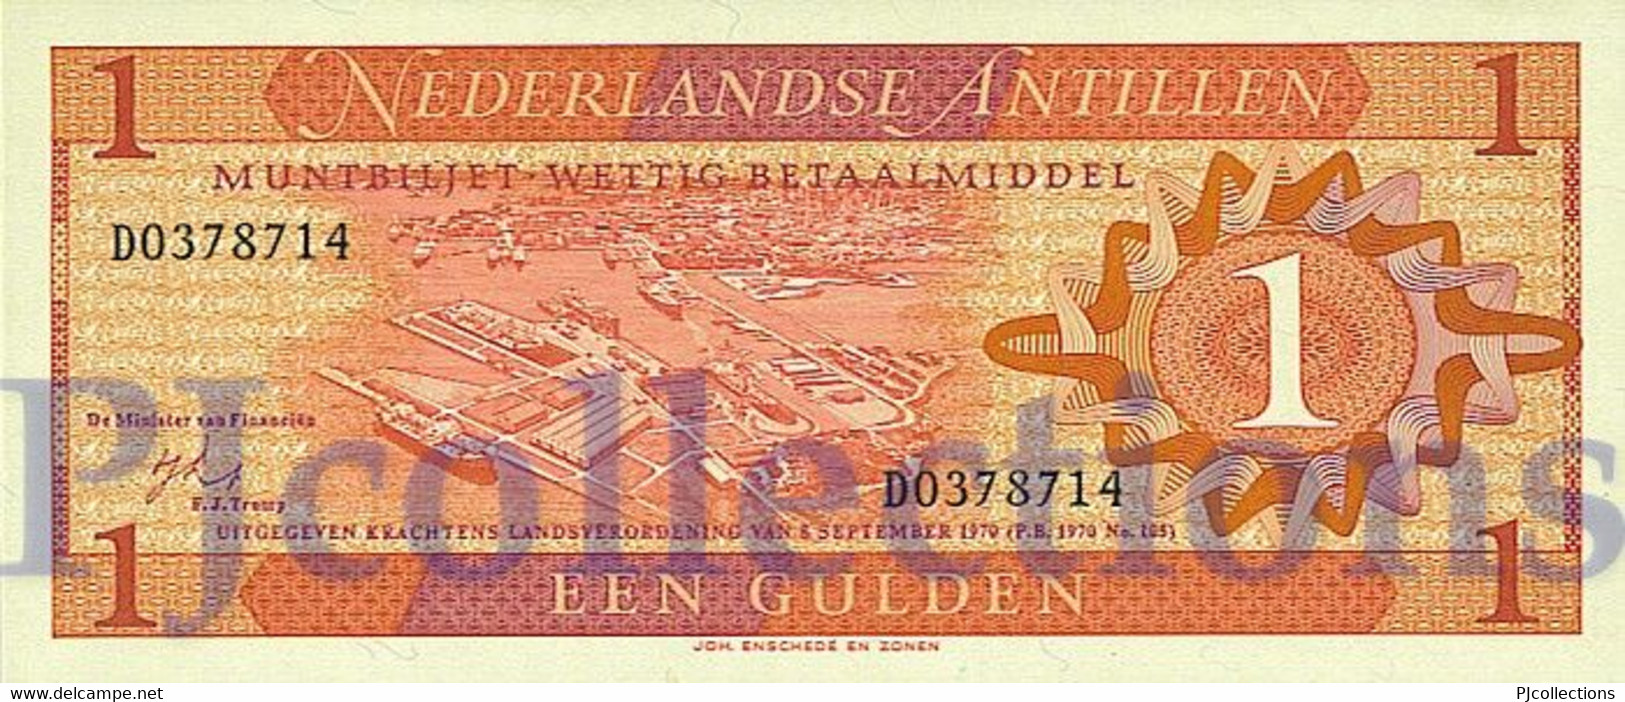 LOT NETHERLANDS ANTILLES 1 GULDEN 1970 PICK 20a UNC X 5 PCS - Netherlands Antilles (...-1986)